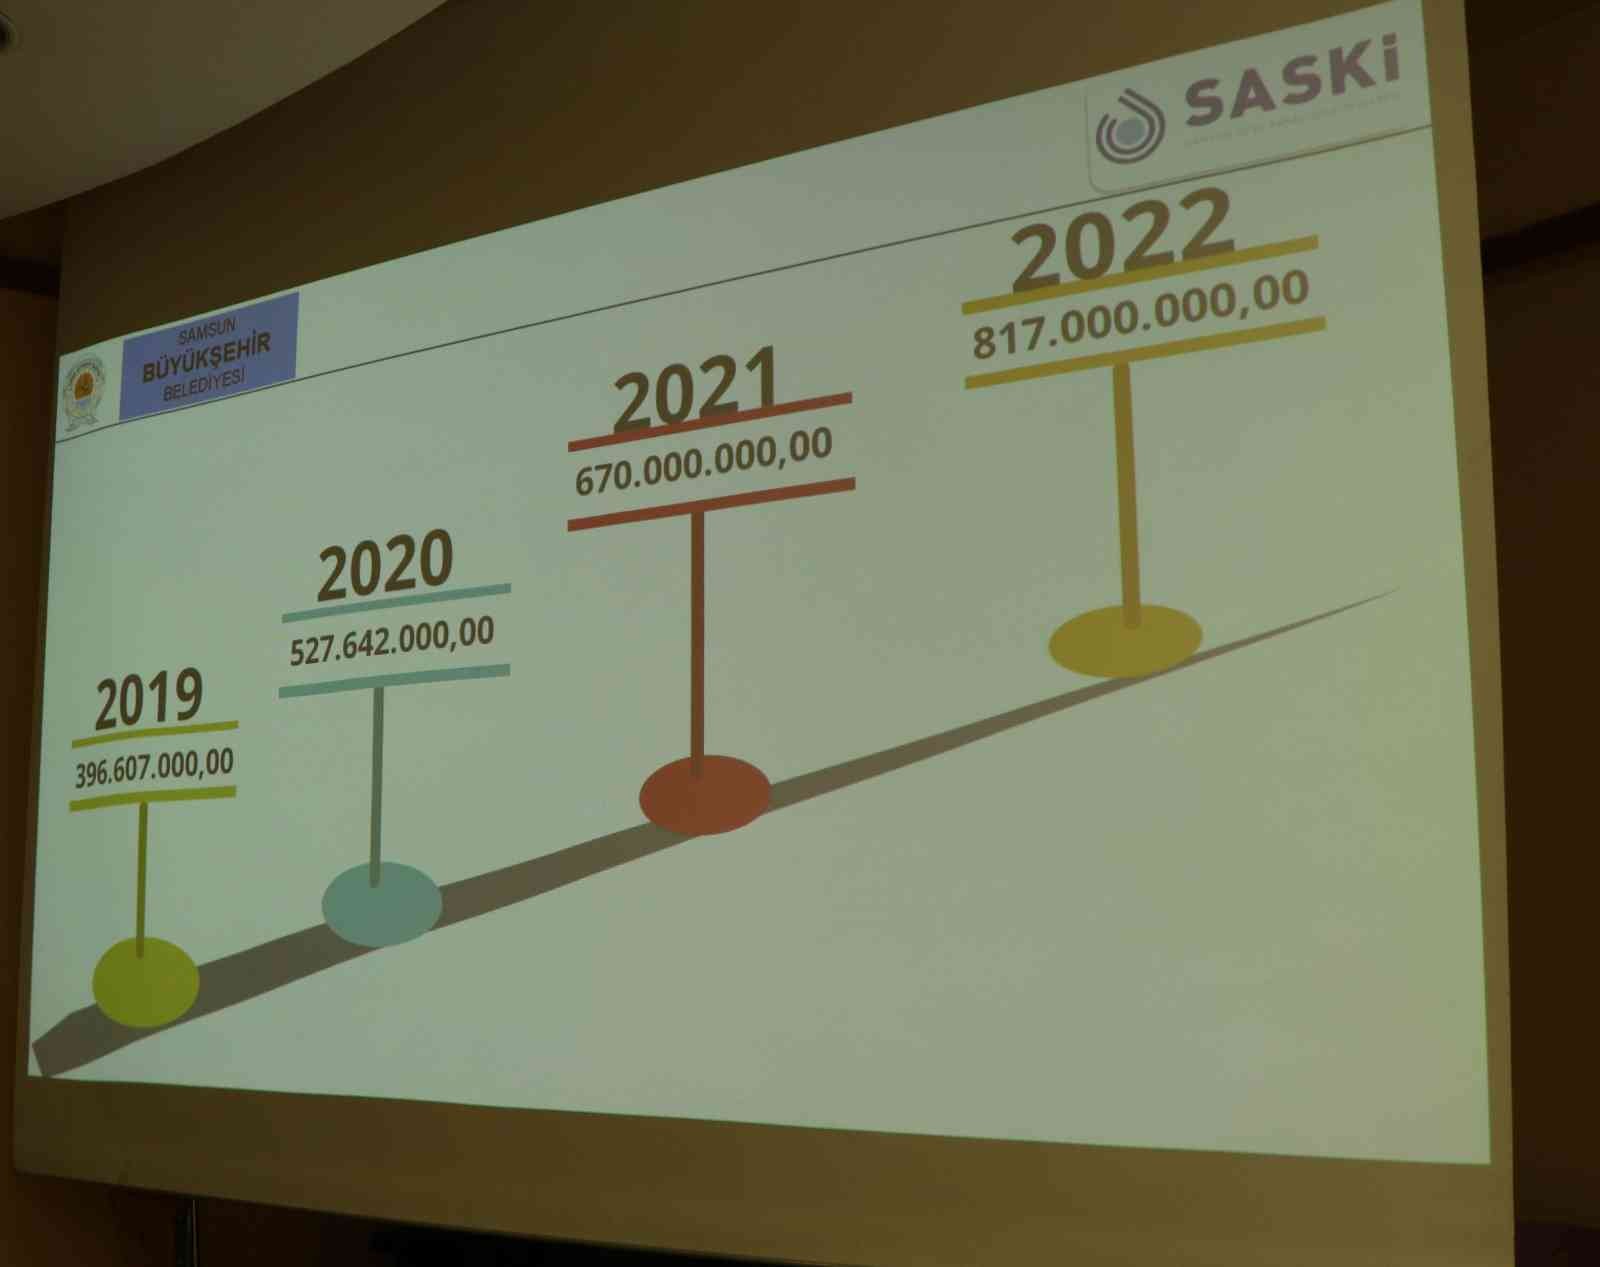 SASKİ'nin 2022 yılı bütçesi 817 milyon TL
